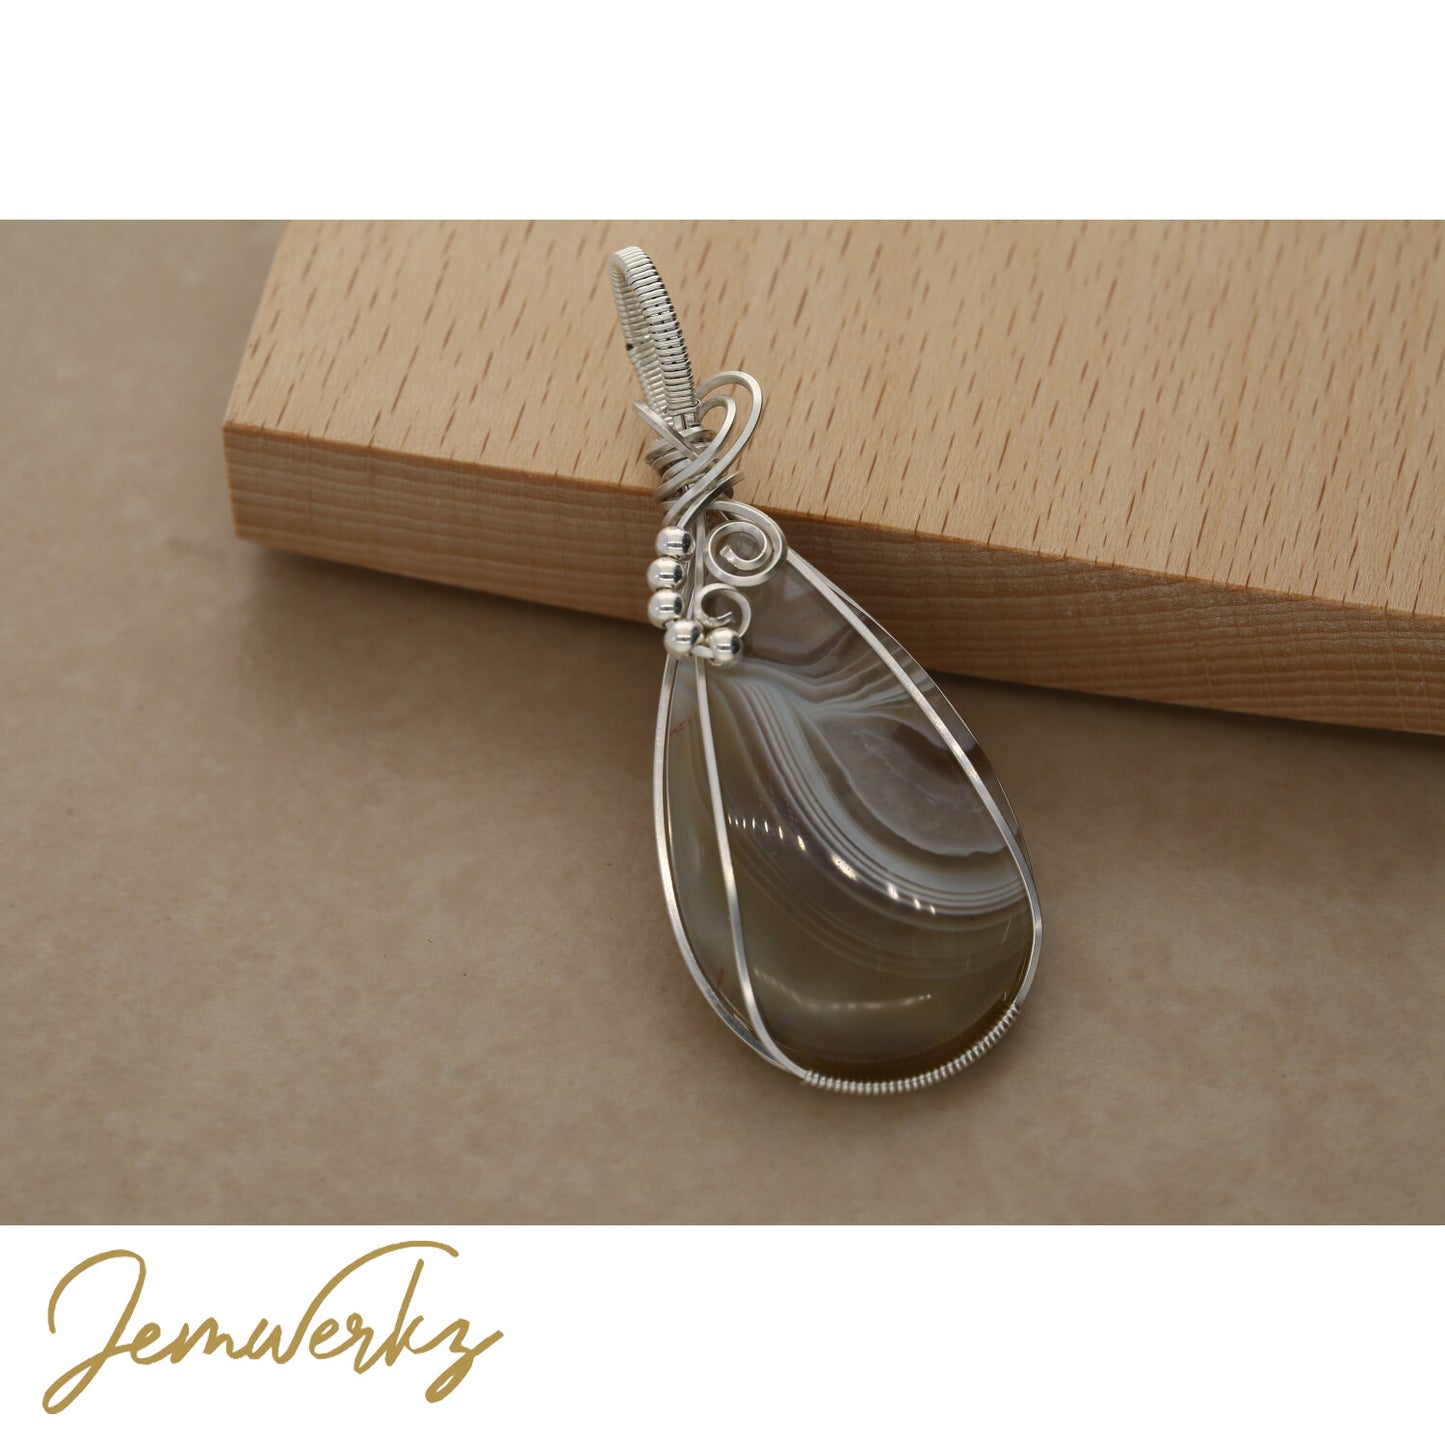 Stone Wire Wrapping | Wrapping Wire Jewelry | jemwerkz